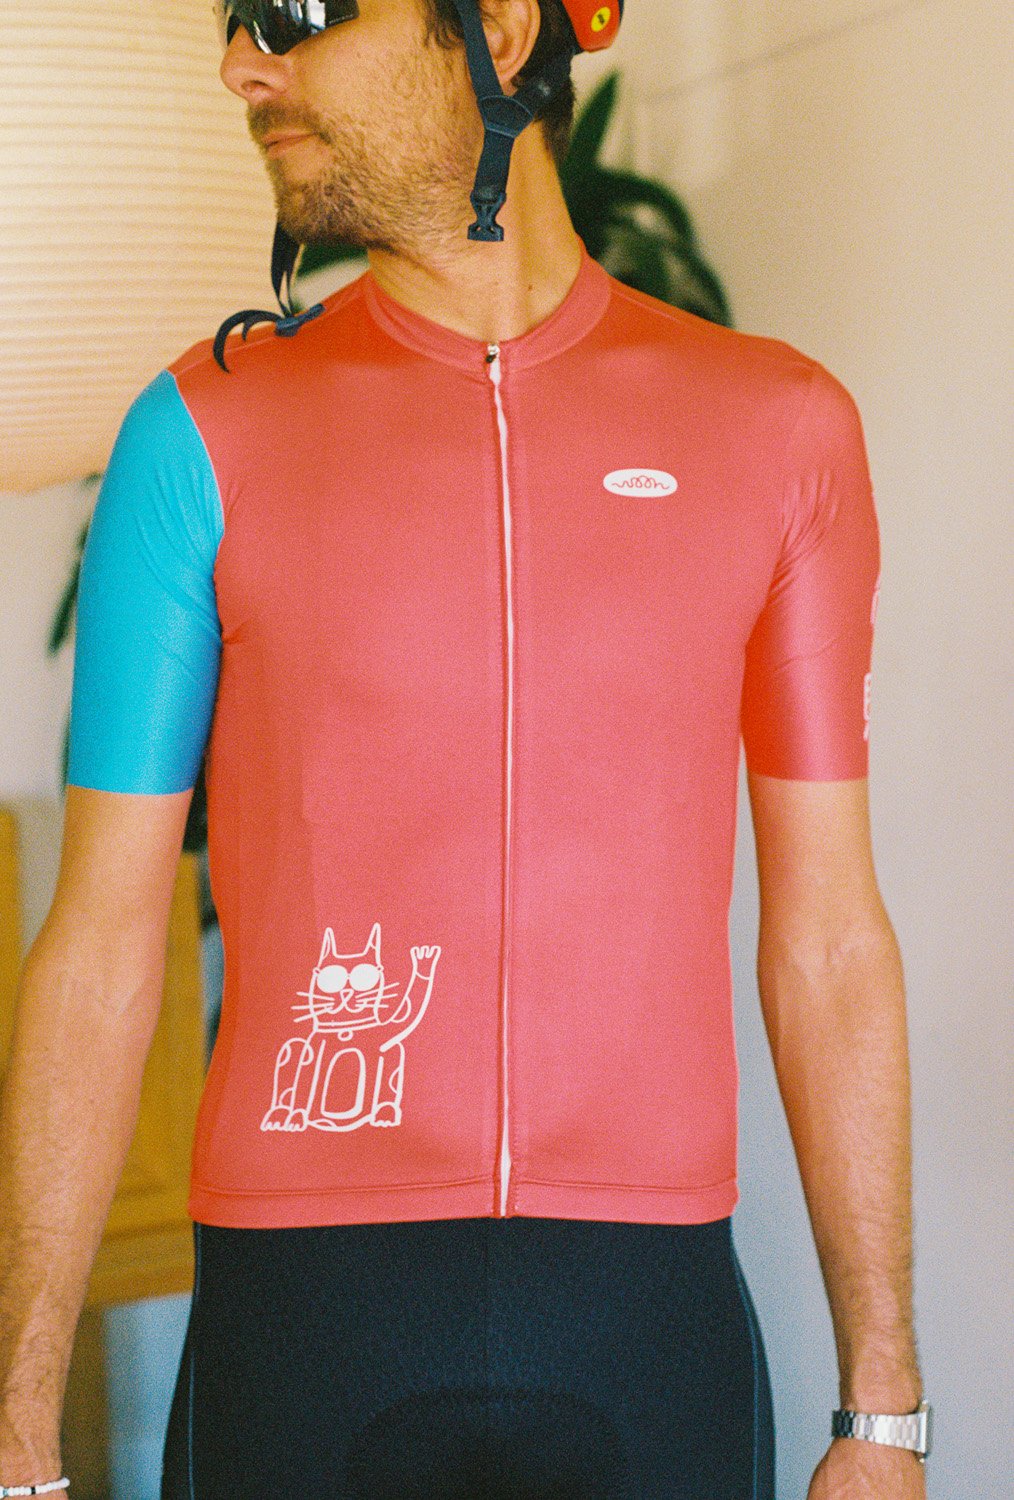 A man wearing a cycling jersey